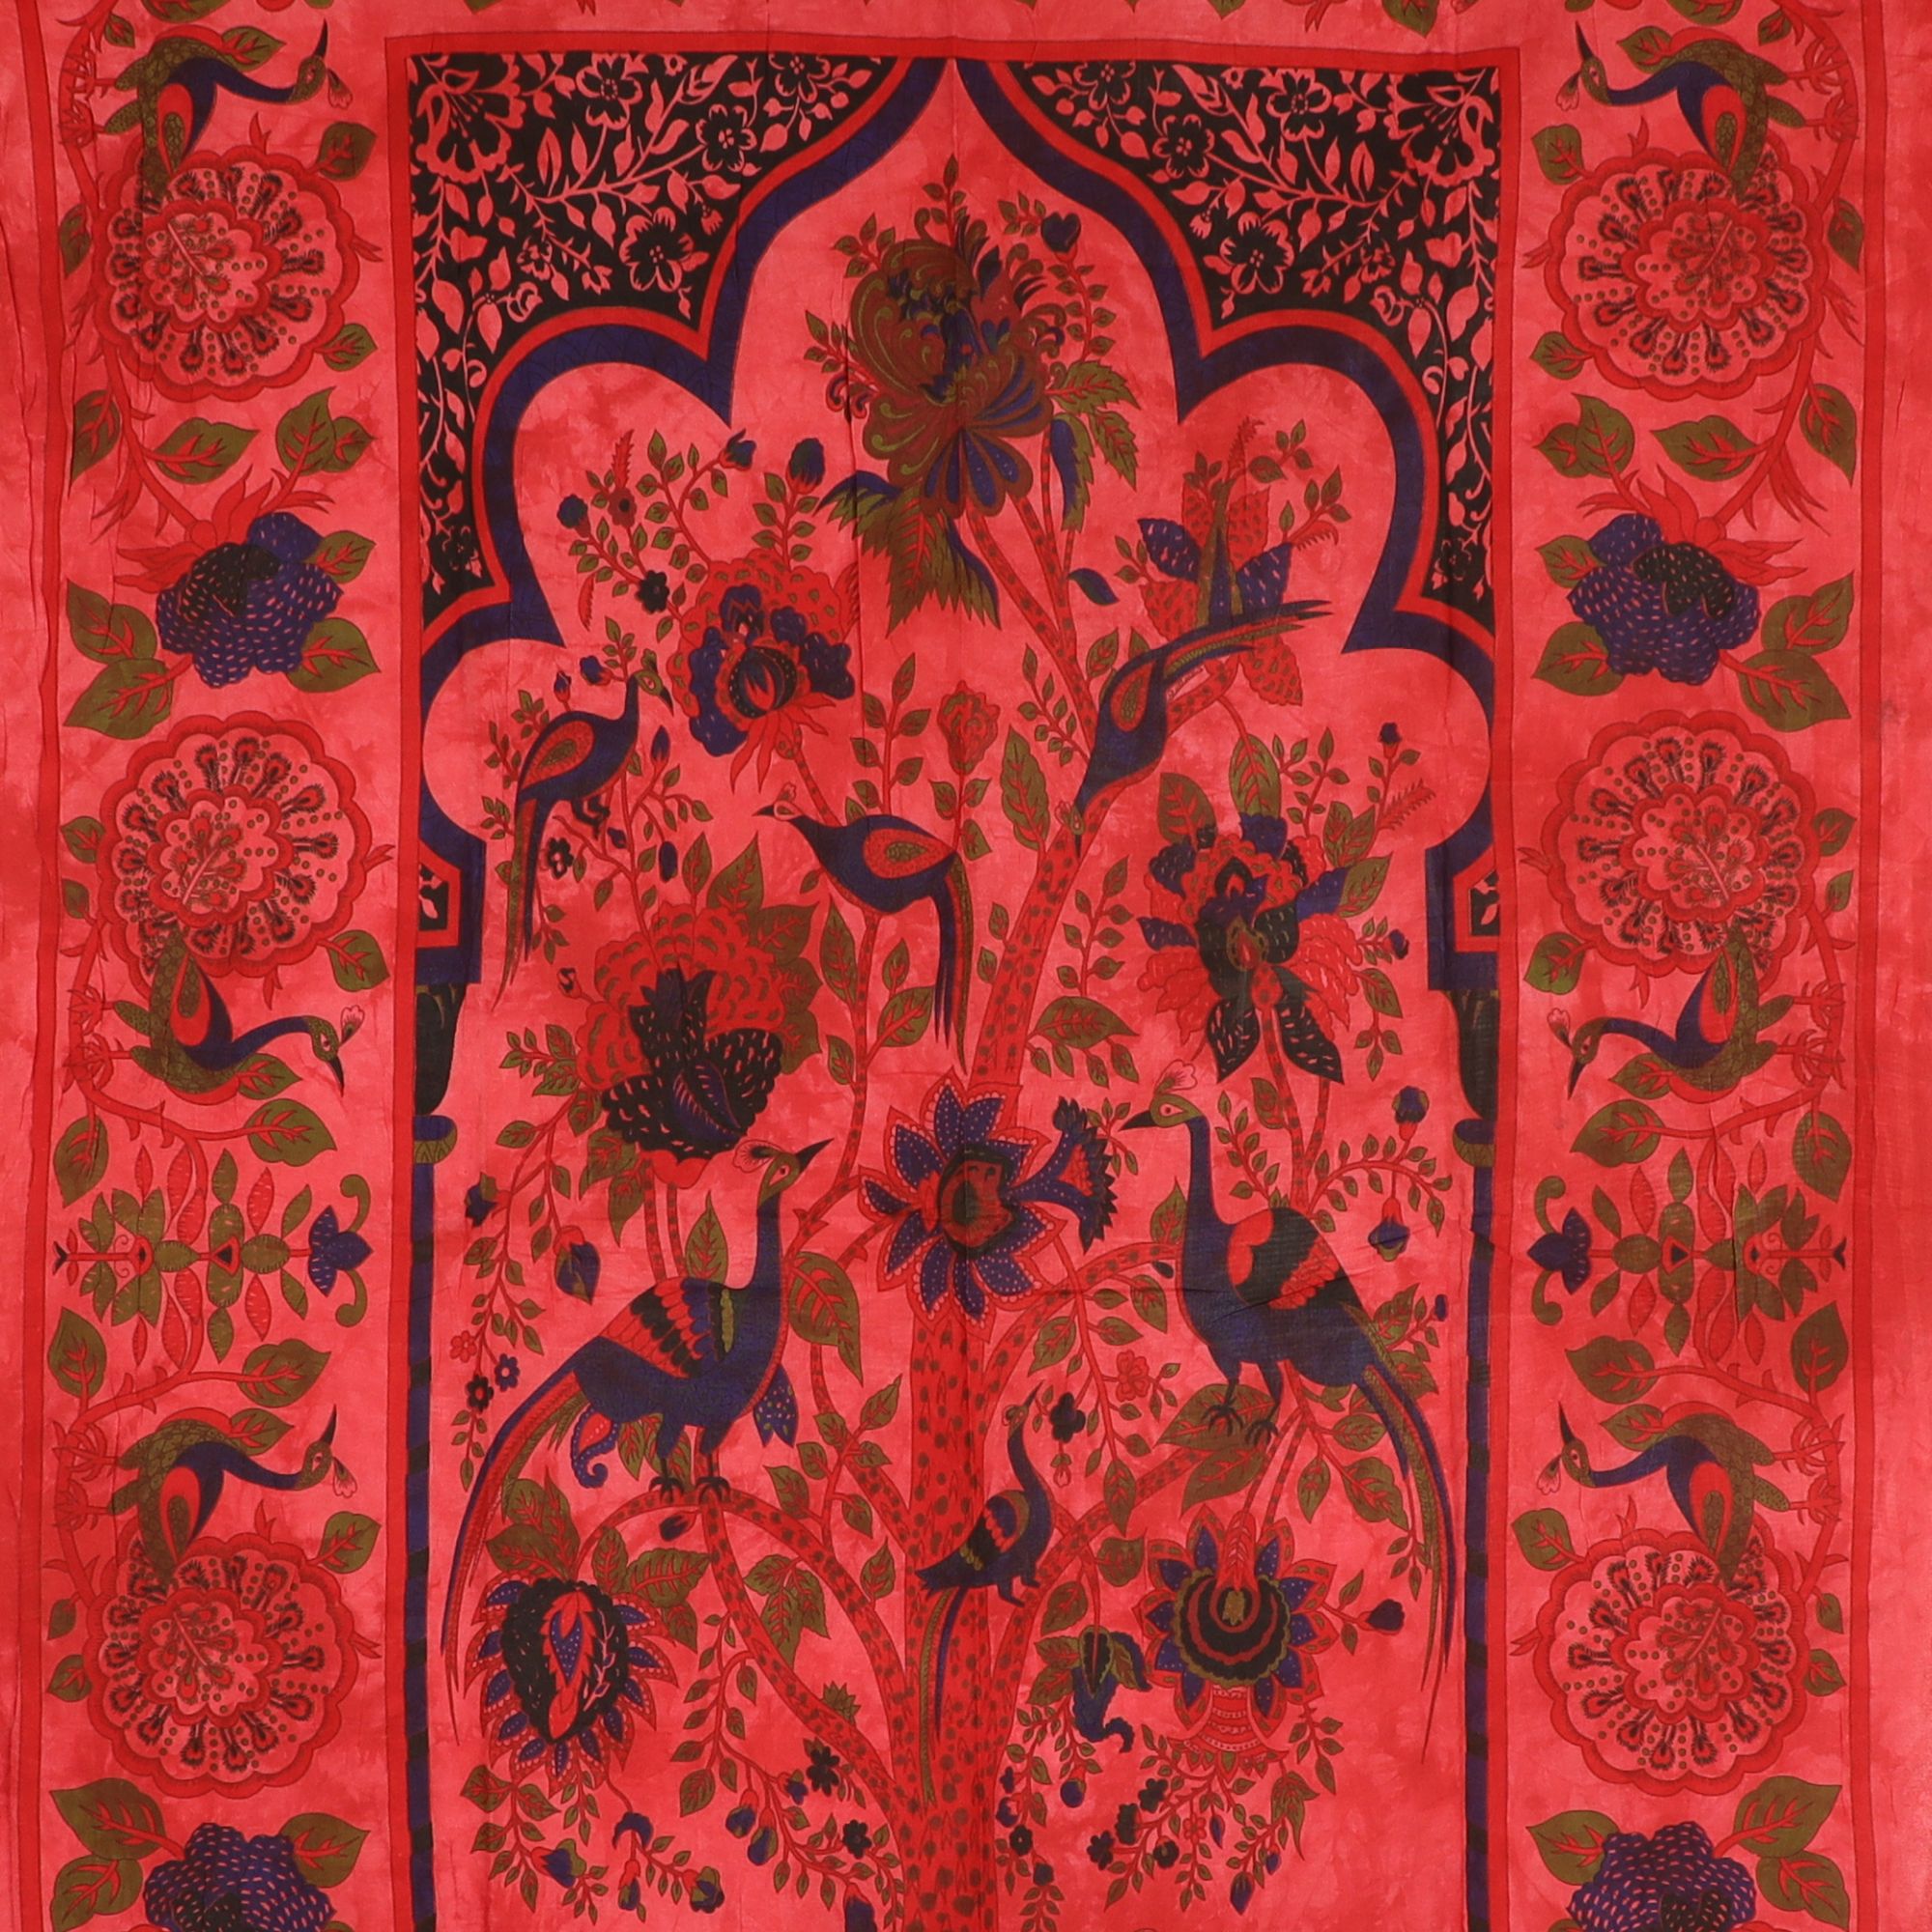 Wandtuch XL 130x210 - Tierreich - Baum mit Tieren - 100% Baumwolle - detailreicher indischer Druck - zweifarbig - Batik - dekoratives Tuch, Wandbild, Tagesdecke, Bedcover, Vorhang, Picknick-Decke, Strandtuch